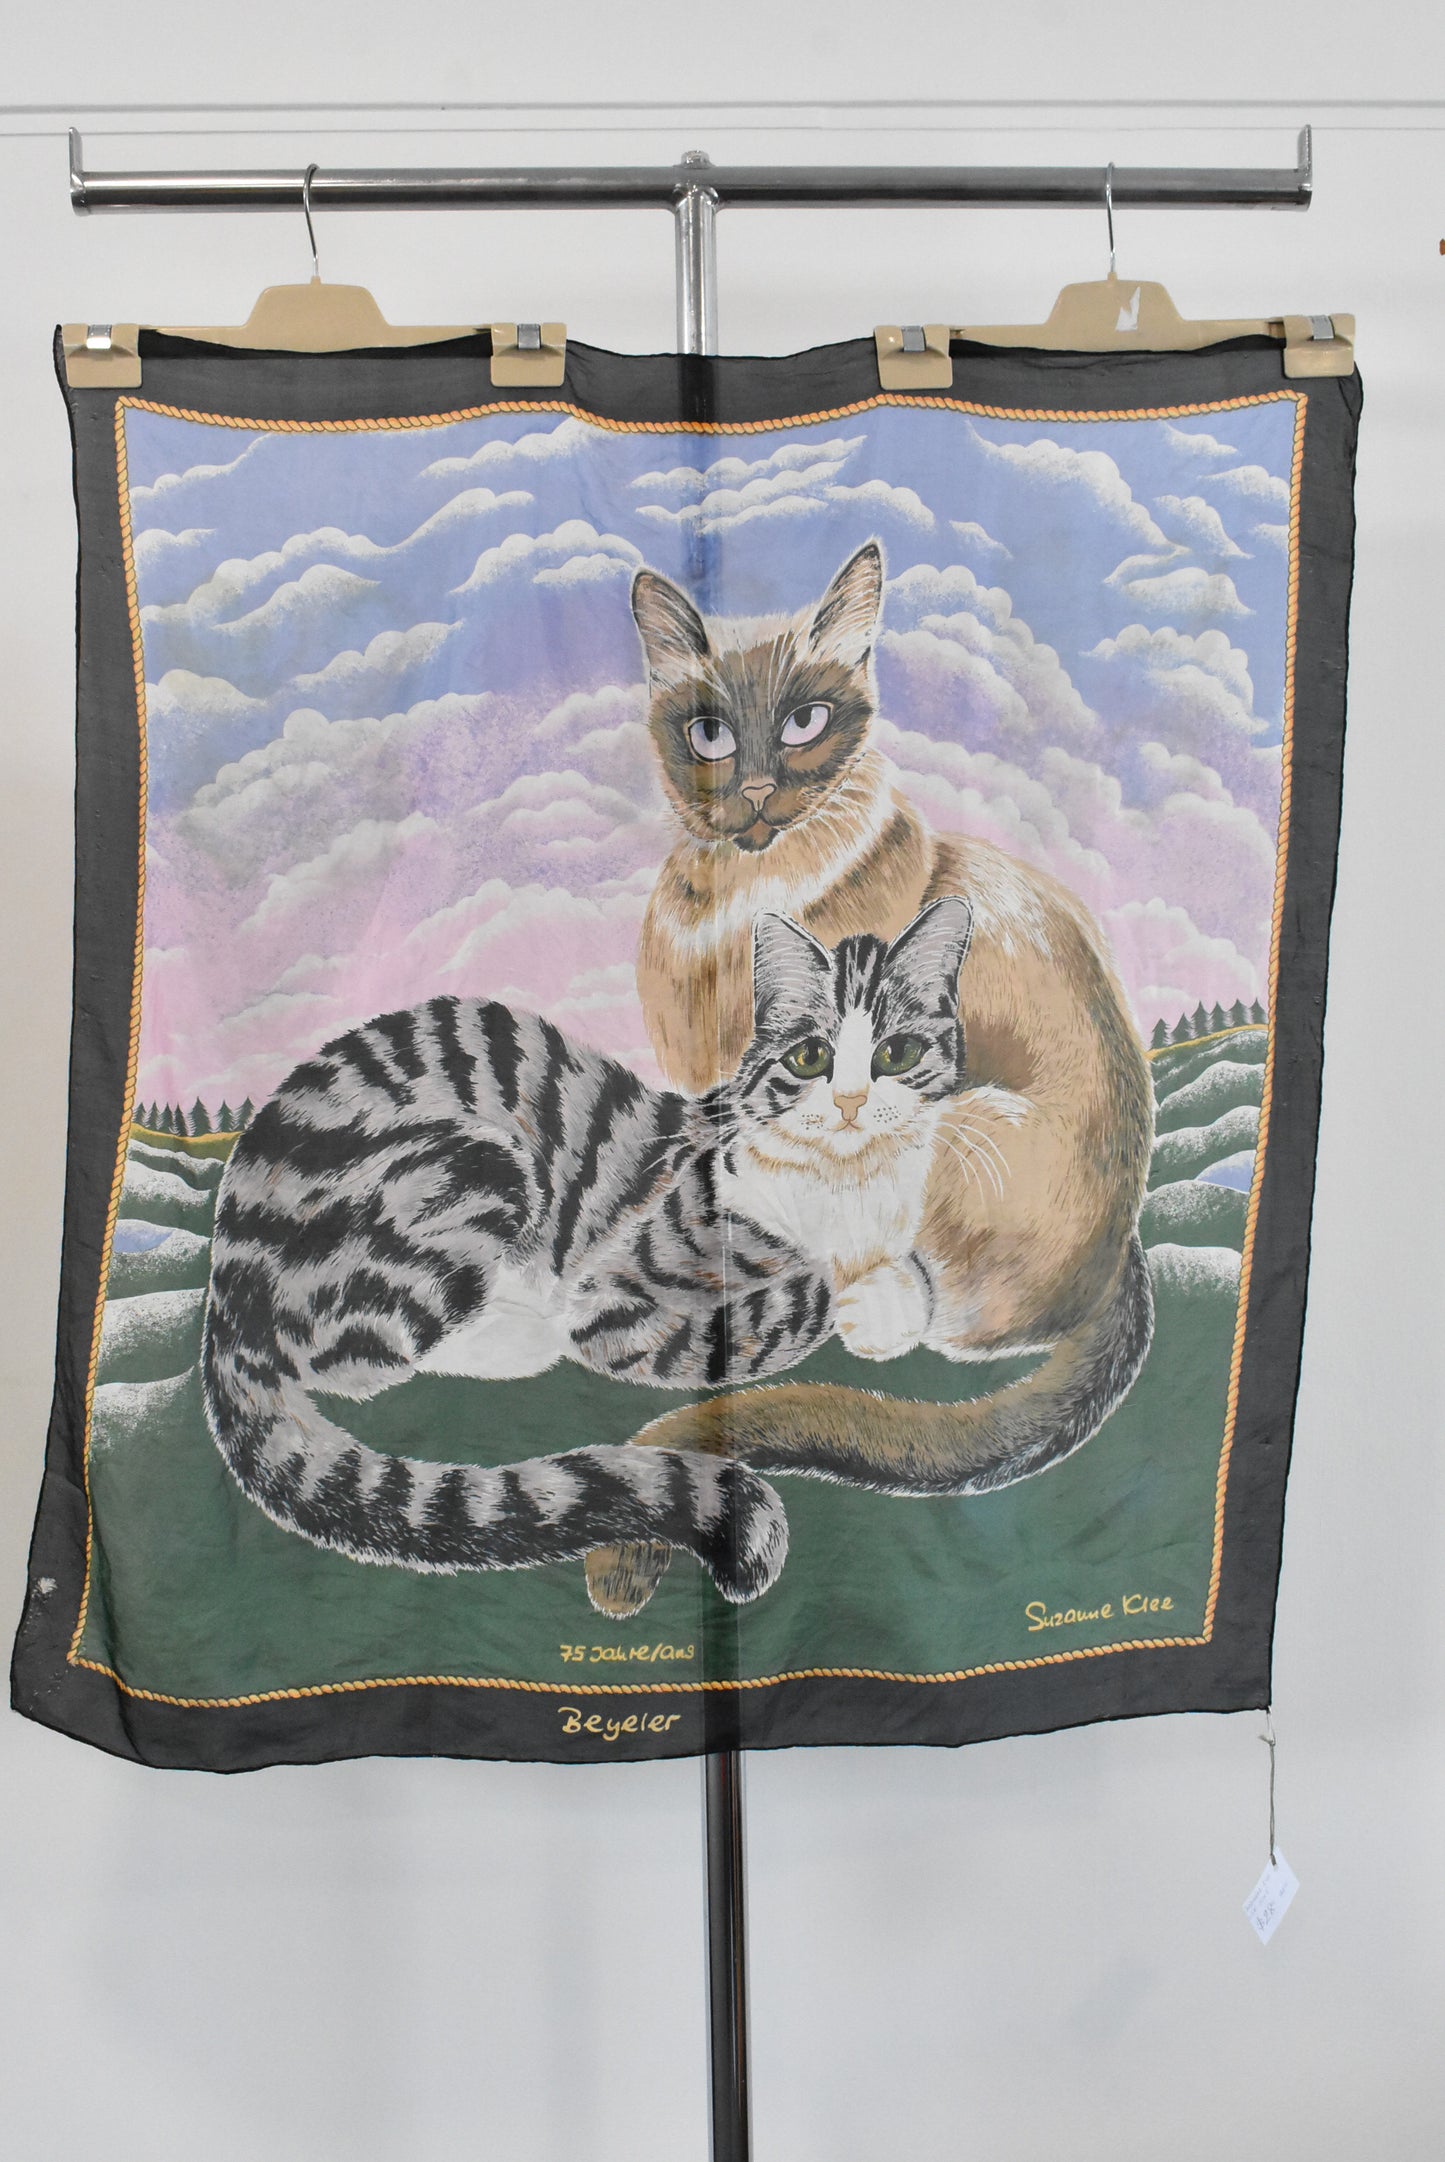 Suzanne Klee silk cat scarf